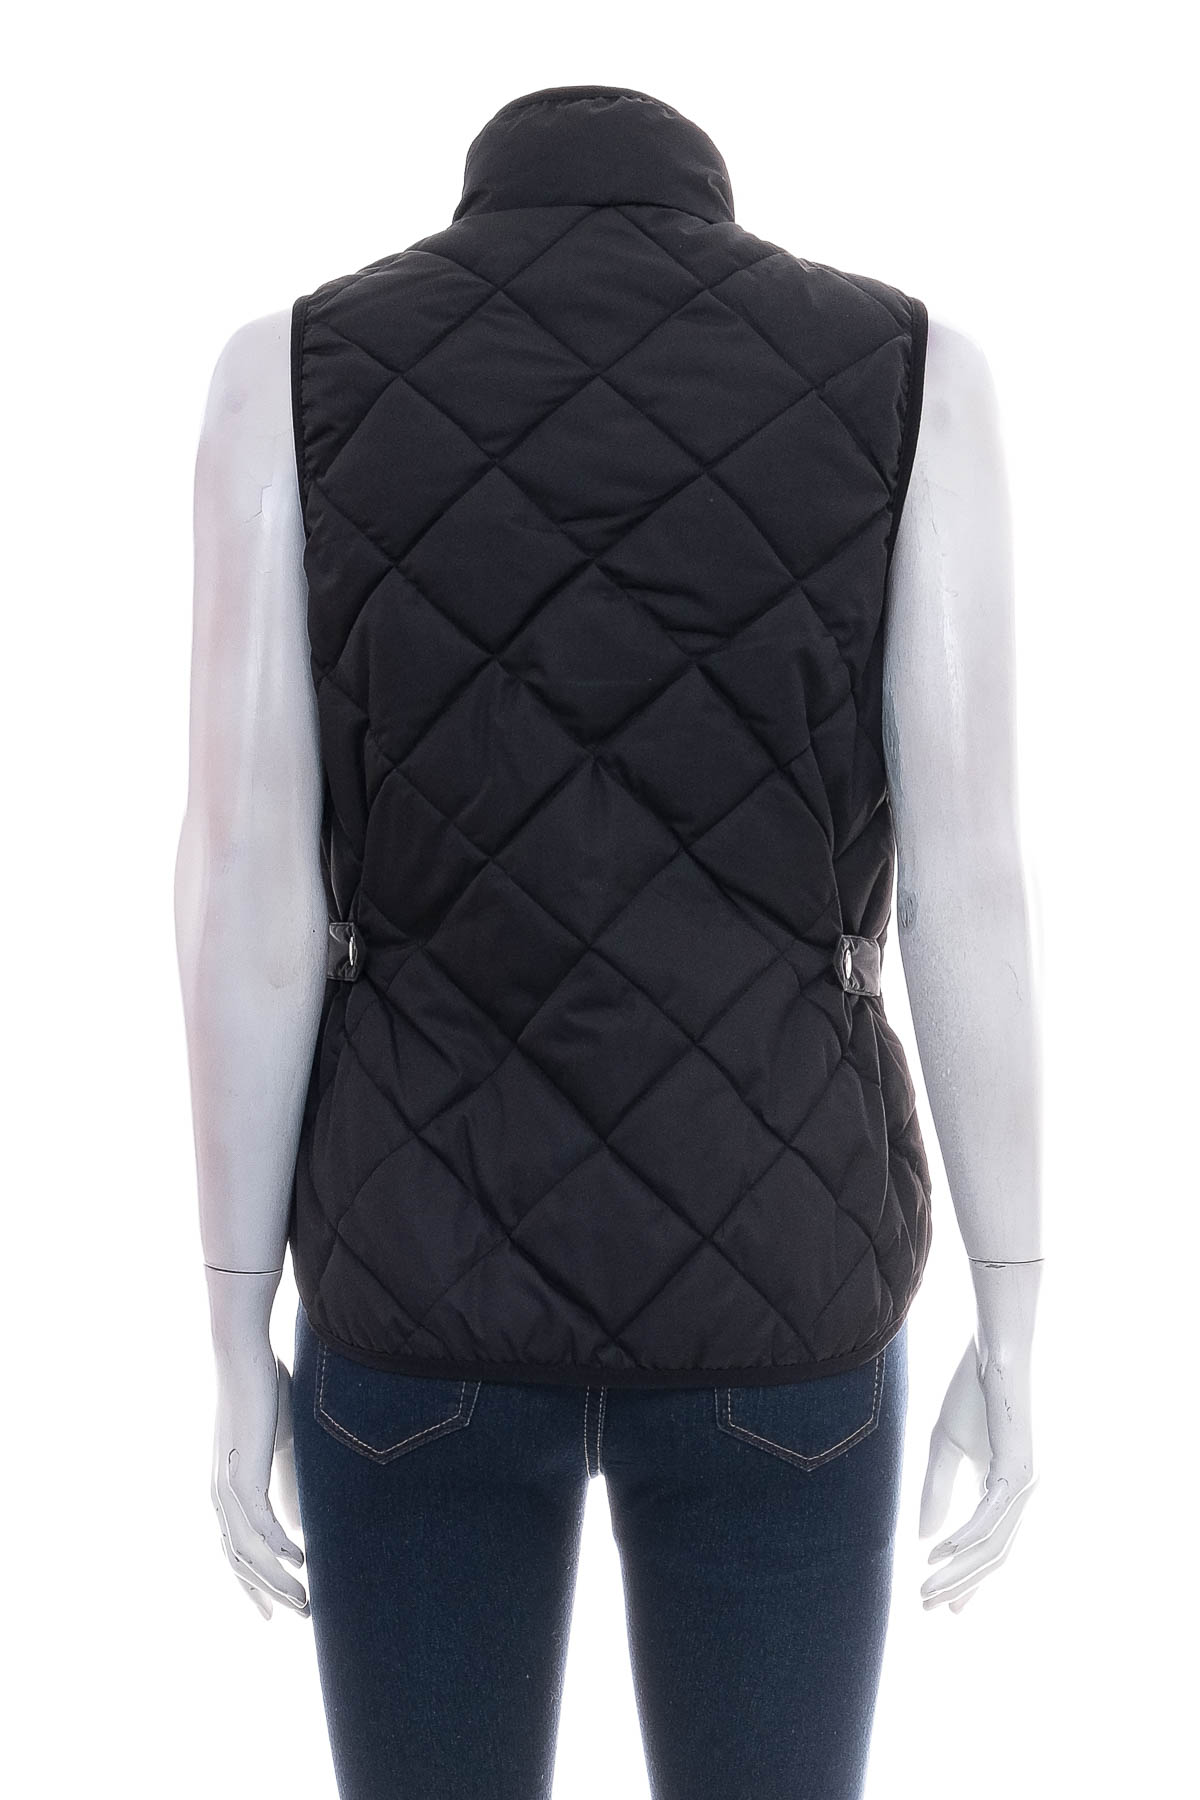 Women's vest - H&M - 1